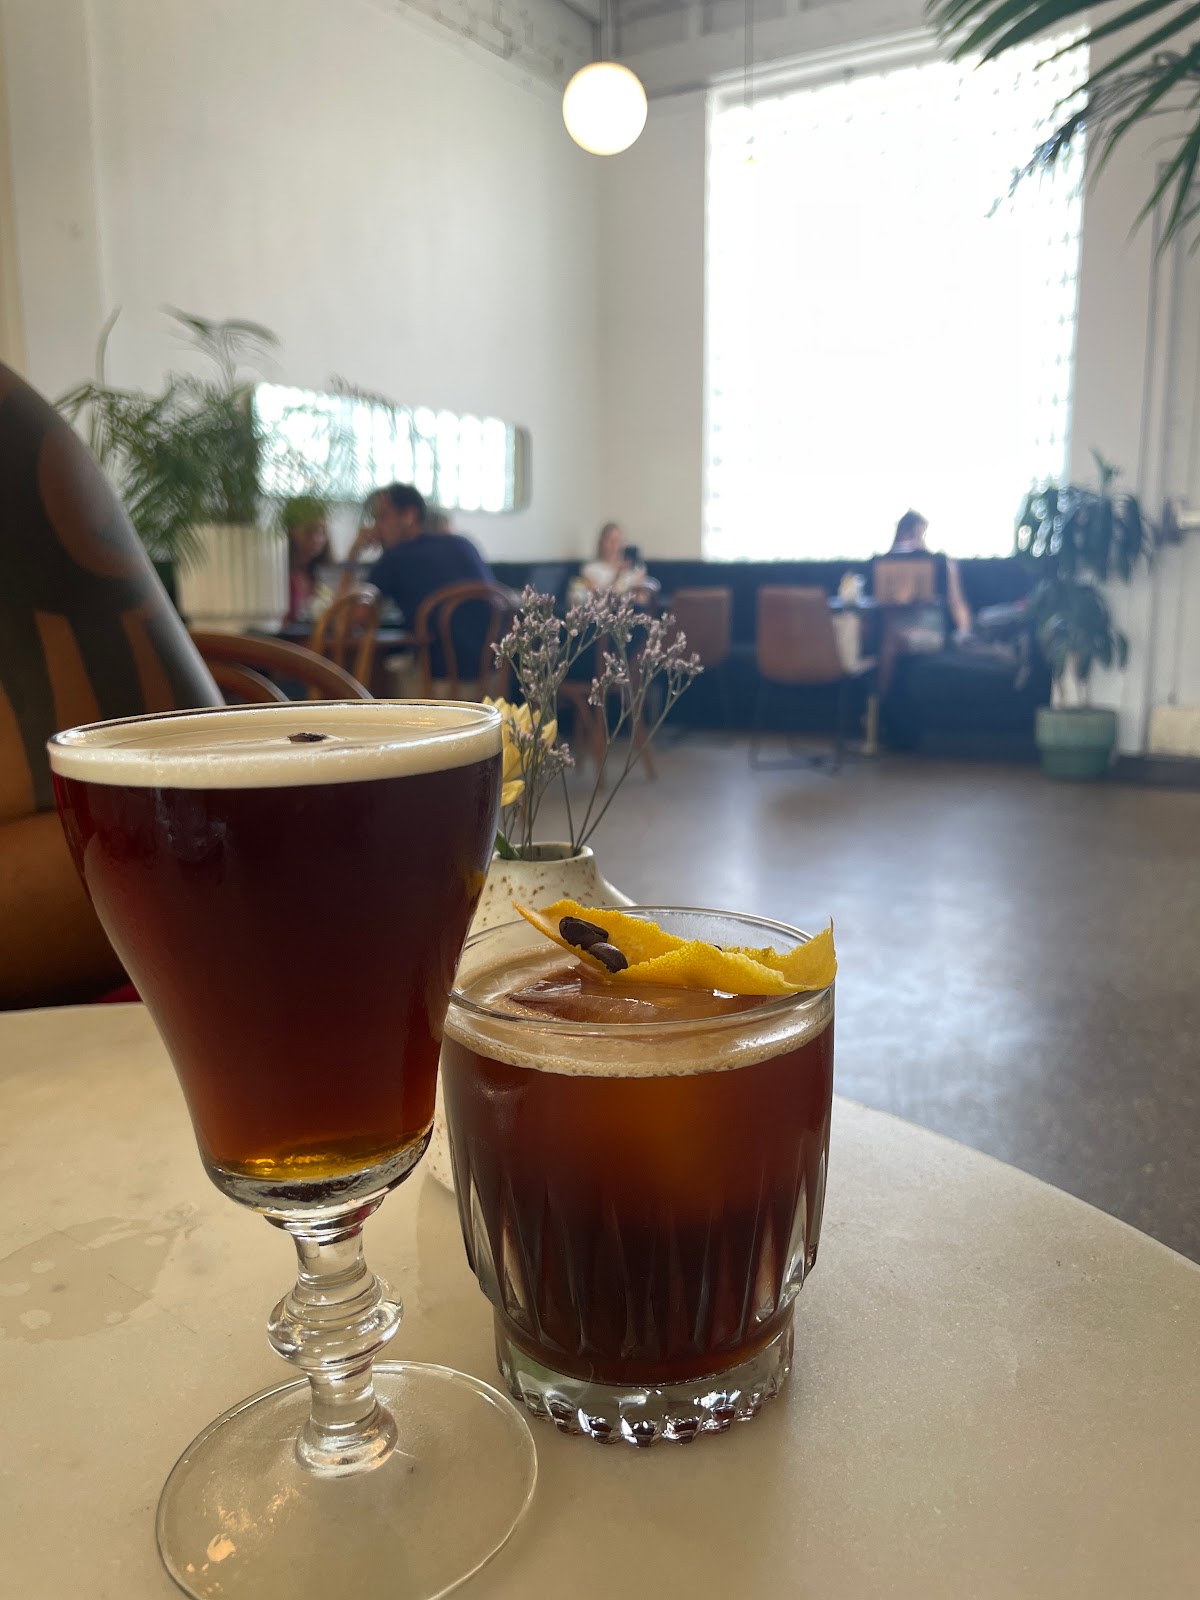 Intermezzo Coffee & Cocktails Best Happy Hour